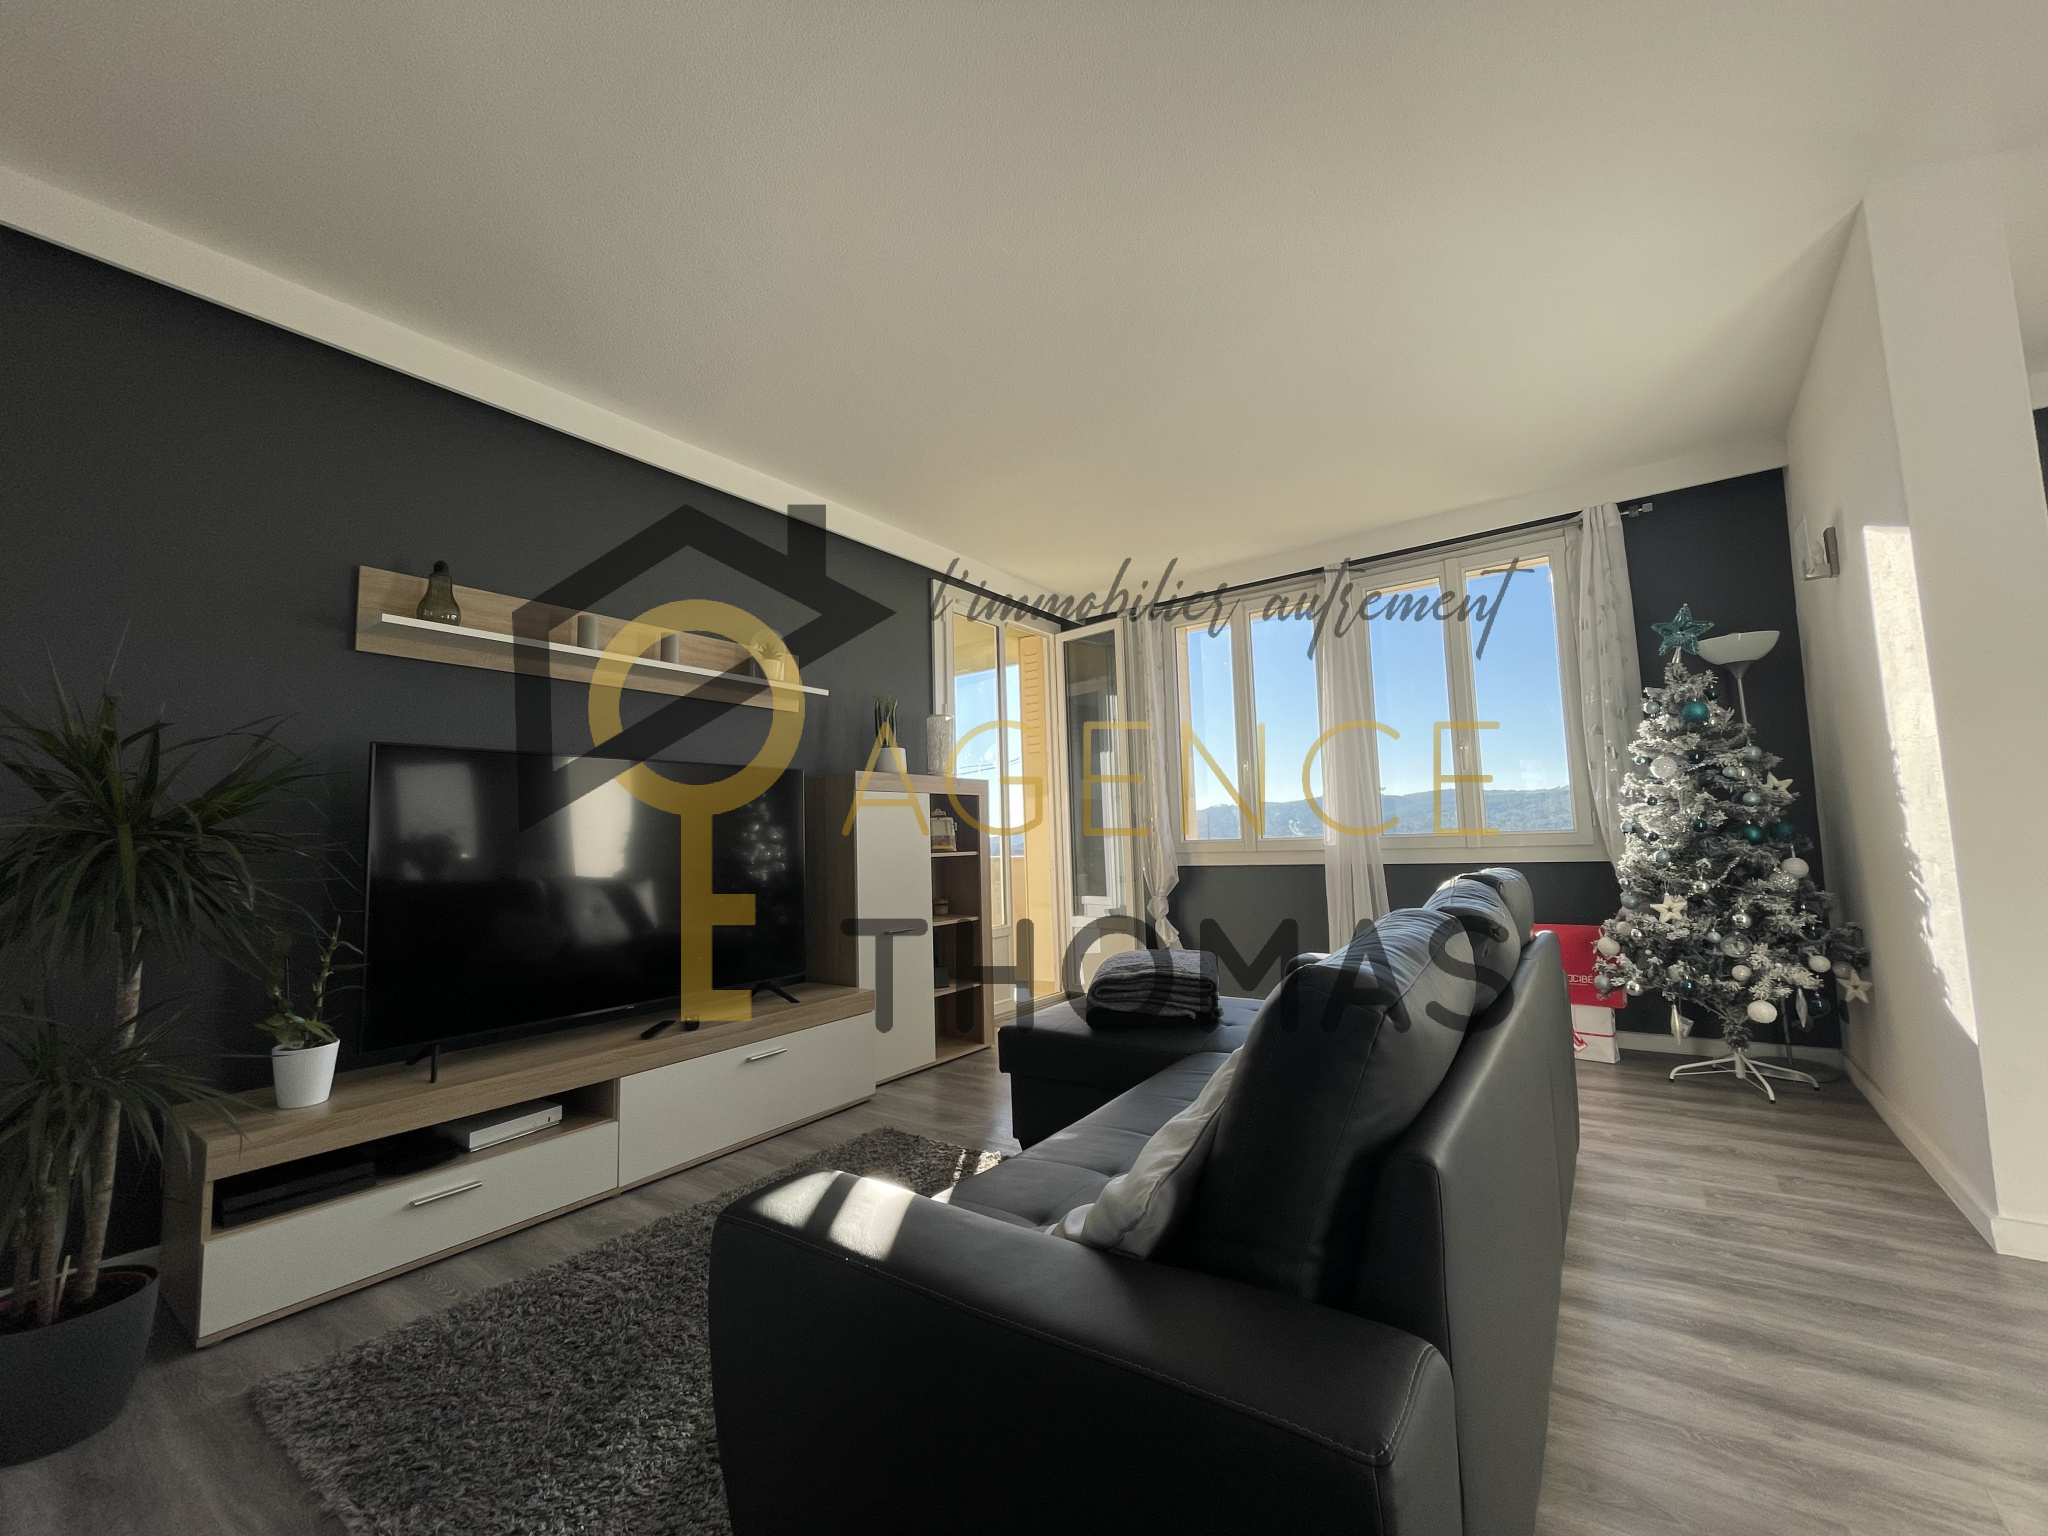 SOUS COMPROMIS - Appartement de 70.7m2 en vente à Aubenas avec Agence Thomas